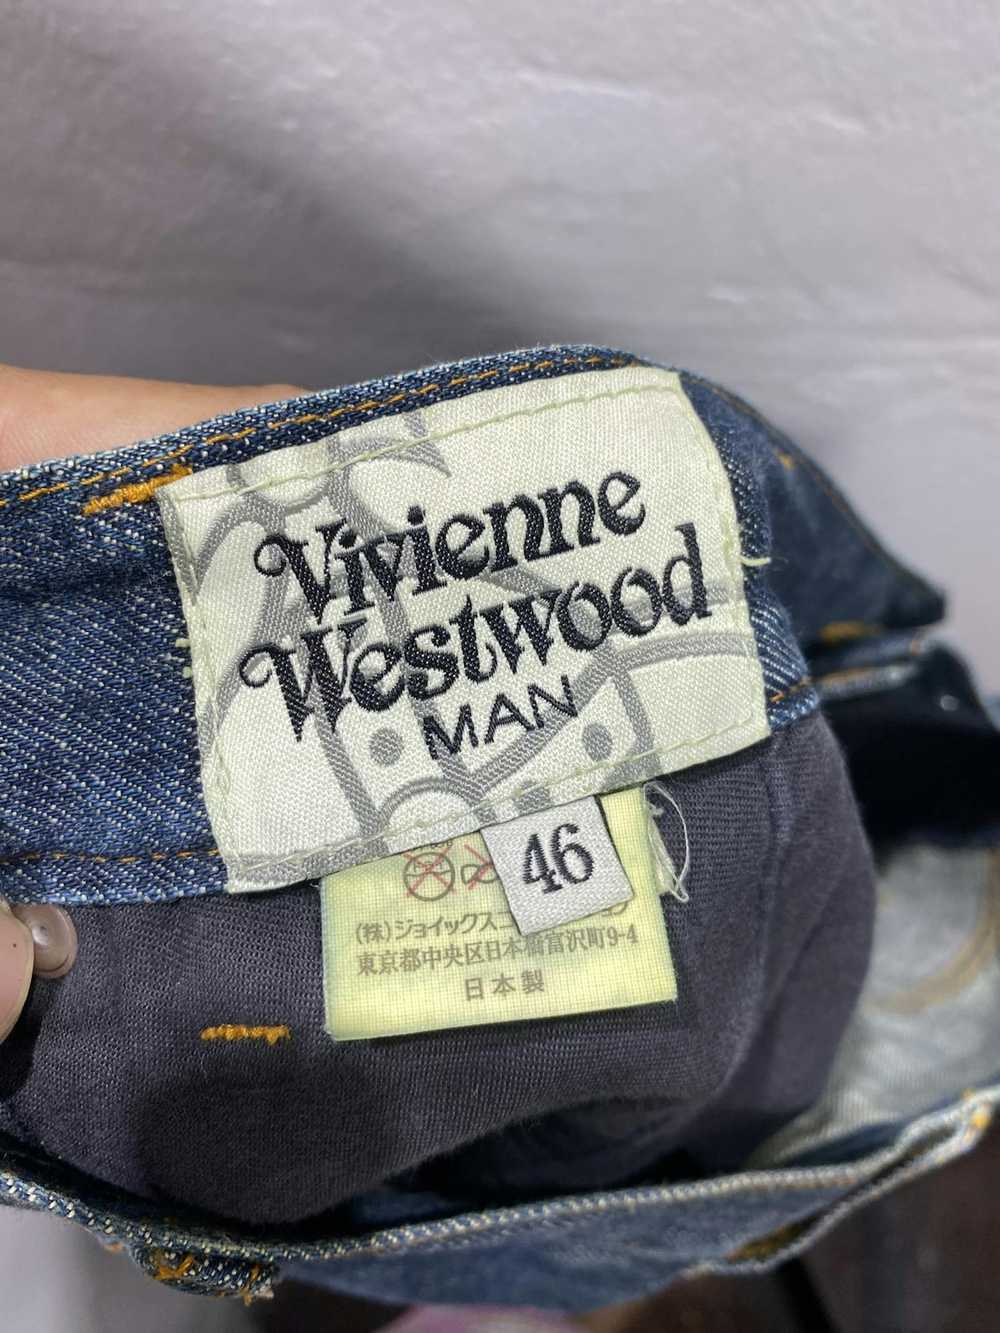 Vivienne Westwood Vivienne Westwood Jeans - image 12